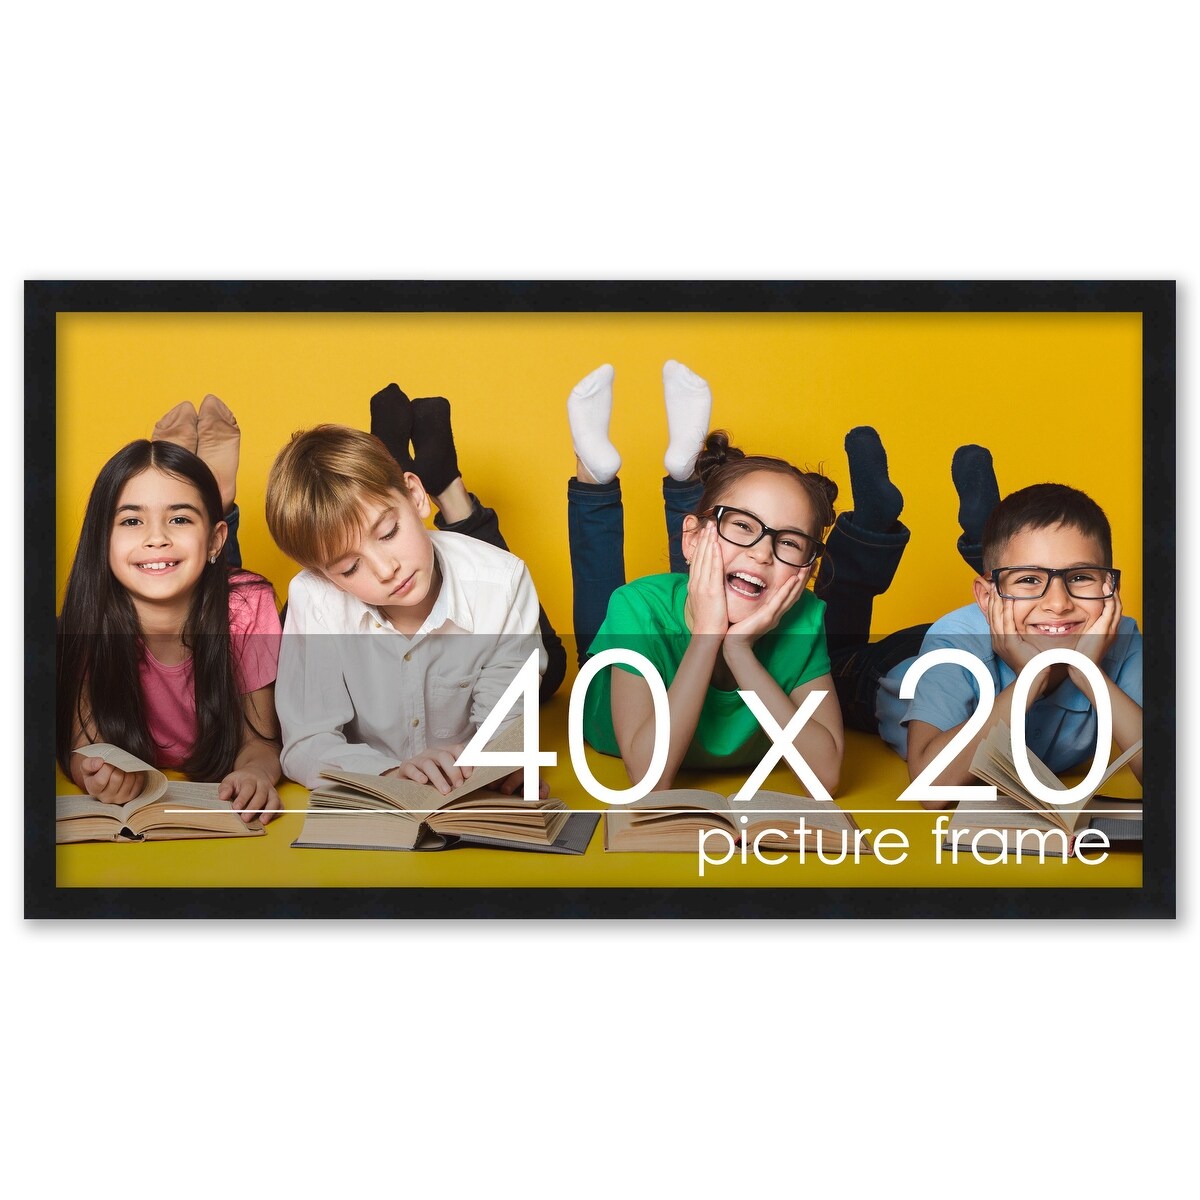 40 x 20 poster frame